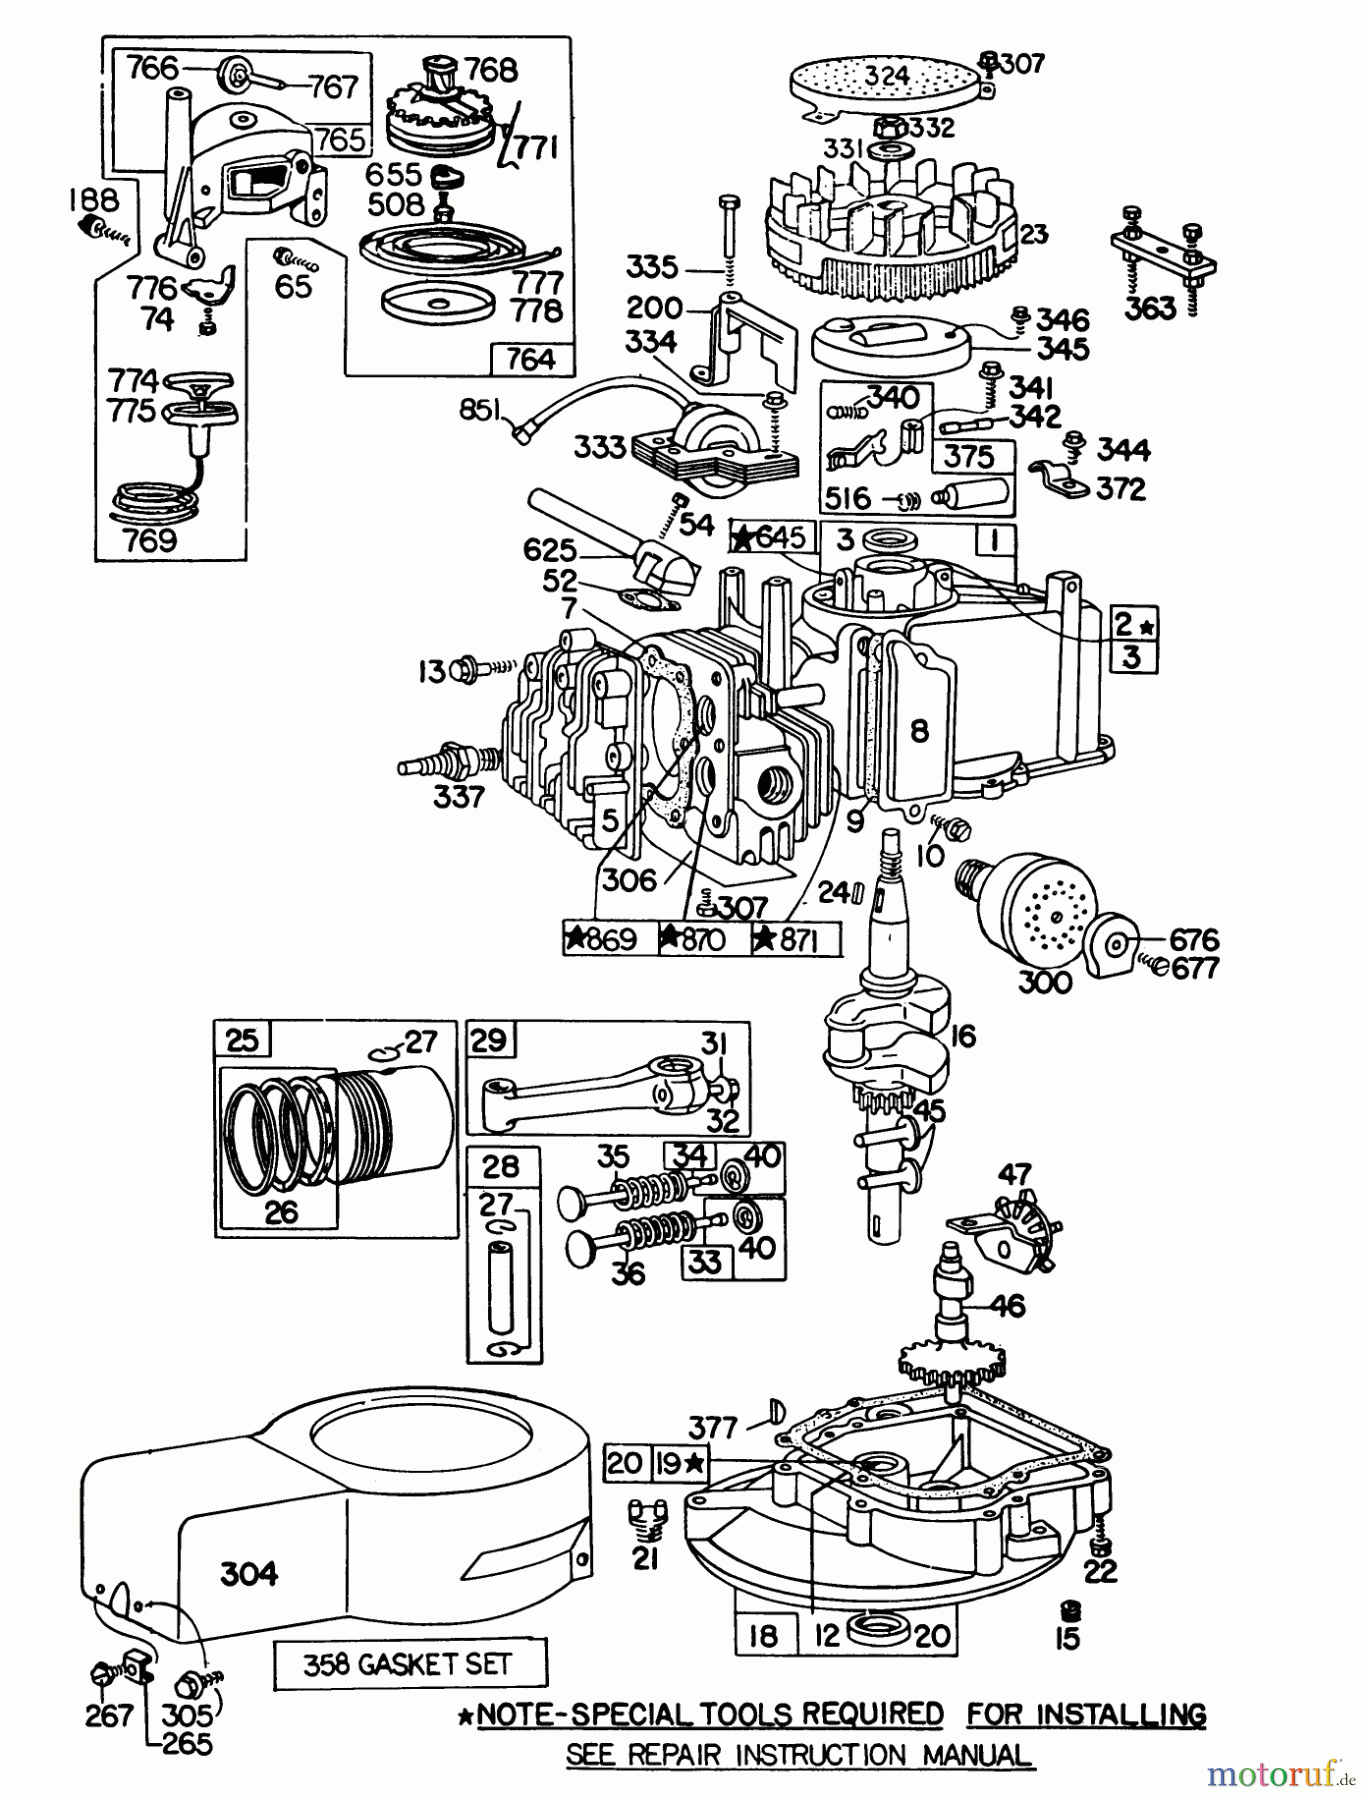  Toro Neu Mowers, Walk-Behind Seite 1 16350 - Toro Lawnmower, 1981 (1000001-1999999) ENGINE BRIGGS & STRATTON MODEL 92508-1033-02